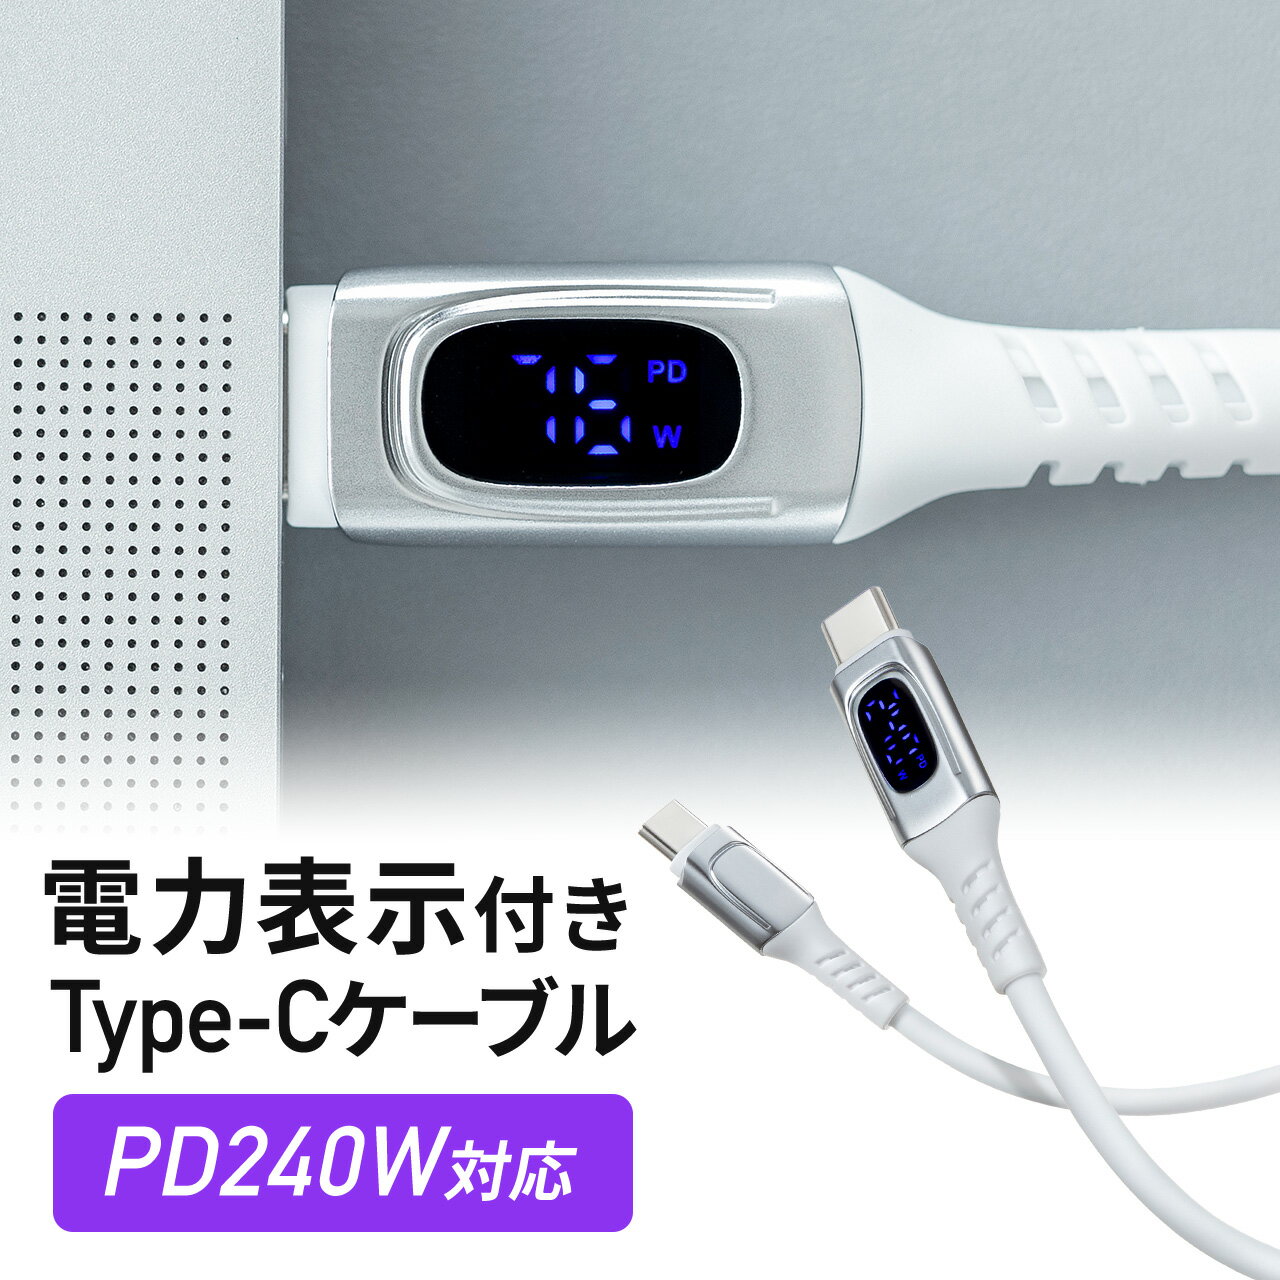 PD電力表示機能付き USB Type-Cケーブル USB PD 240W e-marker搭載 1m やわらかシリコンケーブル USB2.0 充電 データ転送 スマホ タブレット ホワイト Type-C to USB Type-Cケーブル コード ワット数 確認できる 240W対応 絡みにくい 急速充電